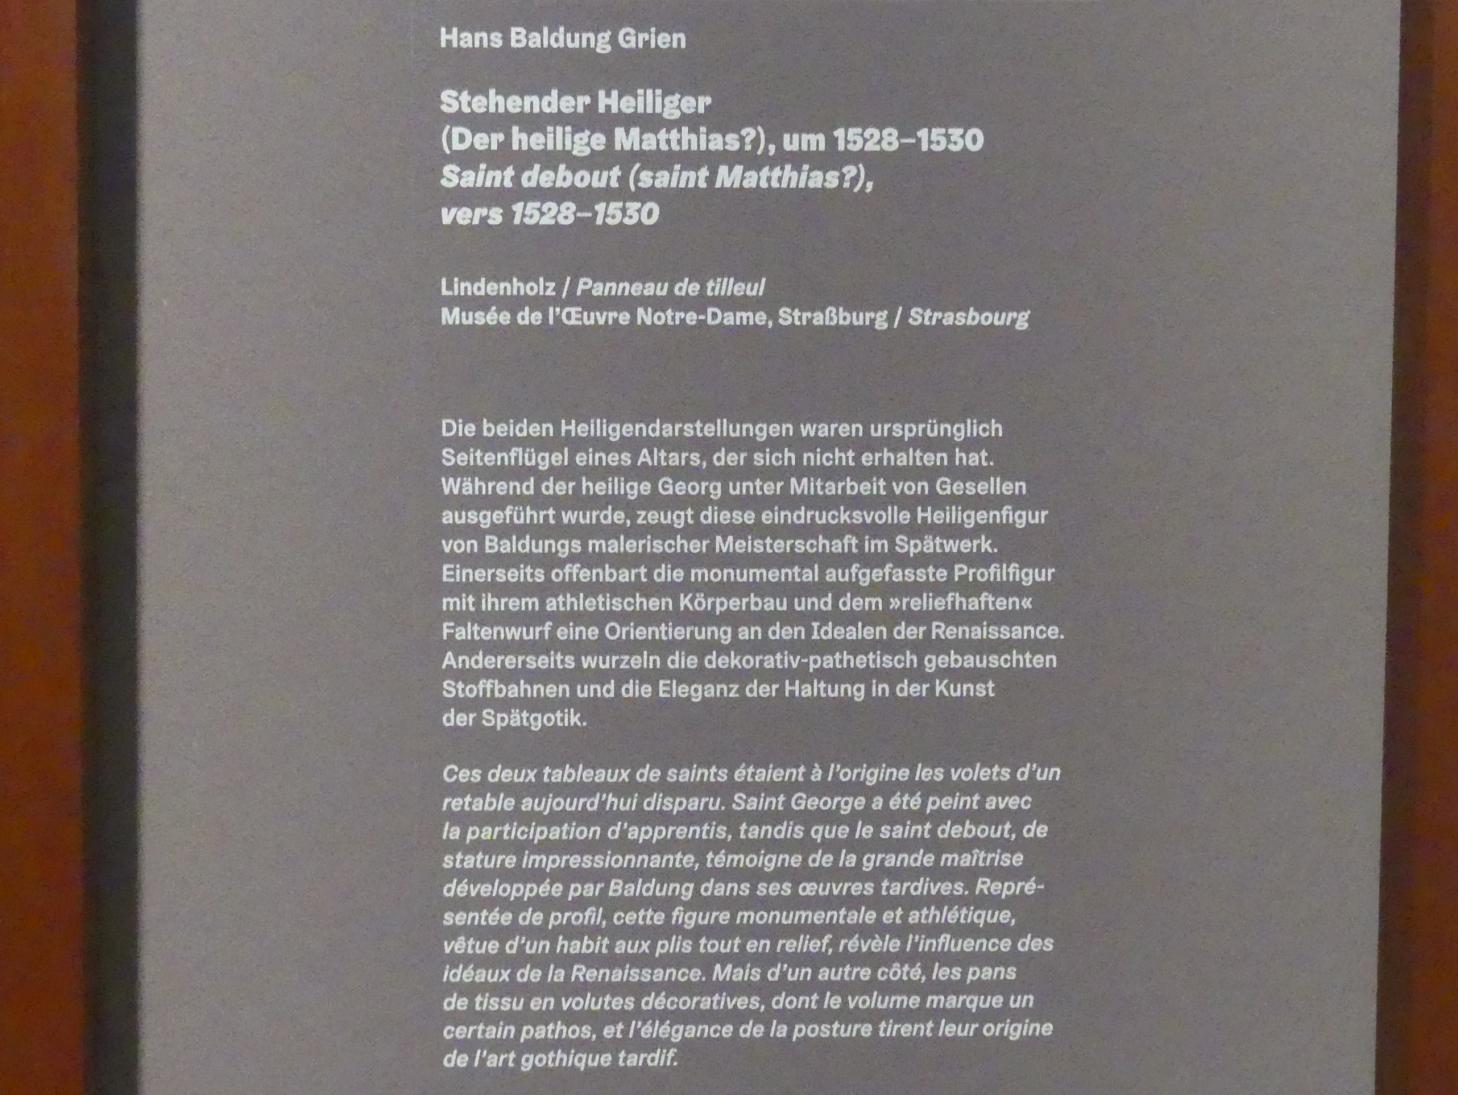 Hans Baldung Grien (1500–1544), Stehender Heiliger (Der heilige Matthias ?), Karlsruhe, Staatliche Kunsthalle, Ausstellung "Hans Baldung Grien, heilig | unheilig", Saal 11, um 1528–1530, Bild 2/2